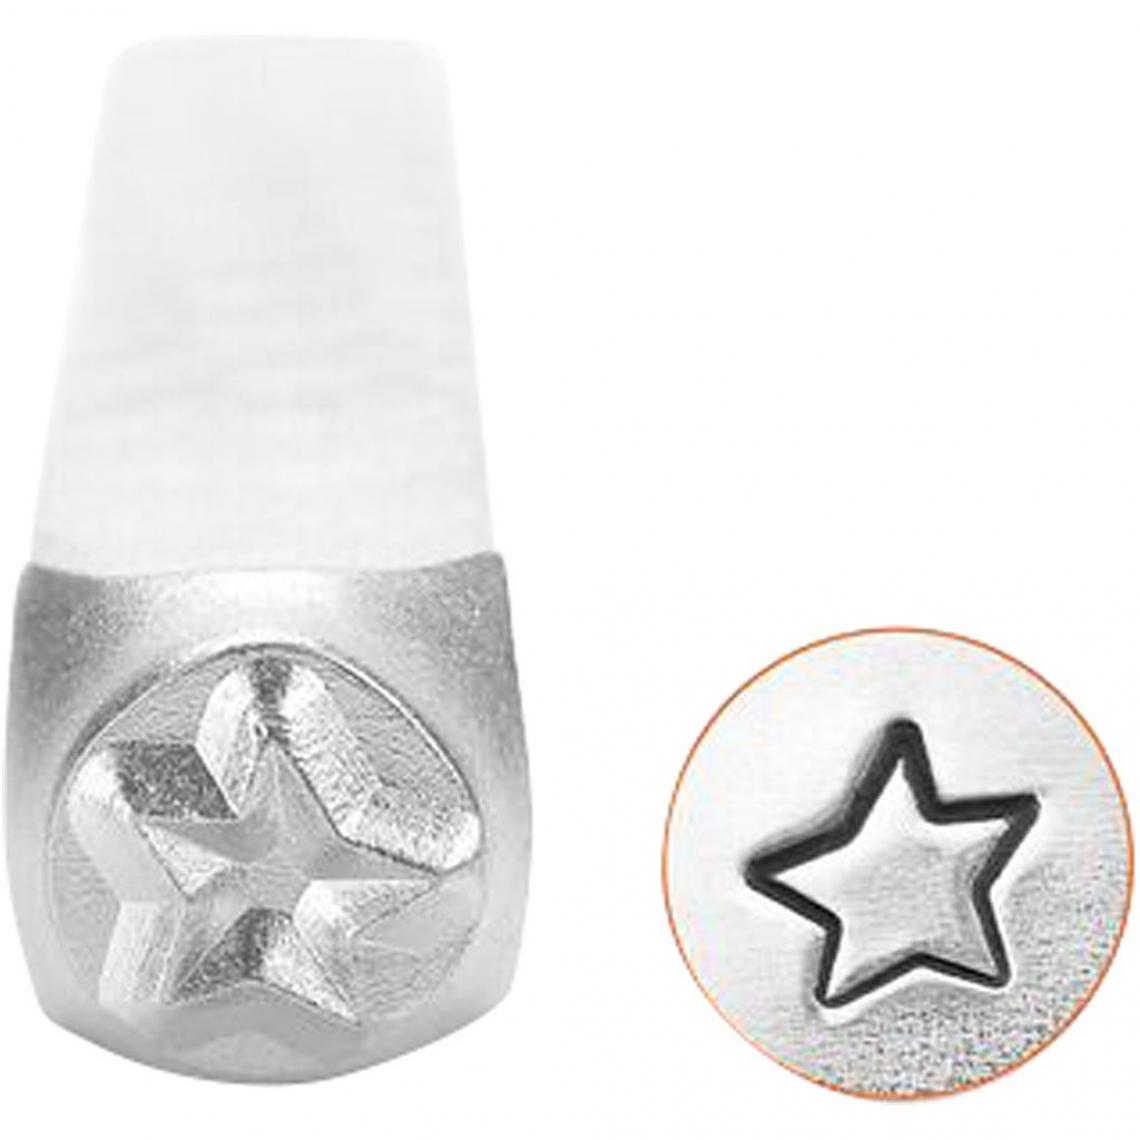 Creotime - Poinçon étoile pour gravure métal - 3 mm - Perles